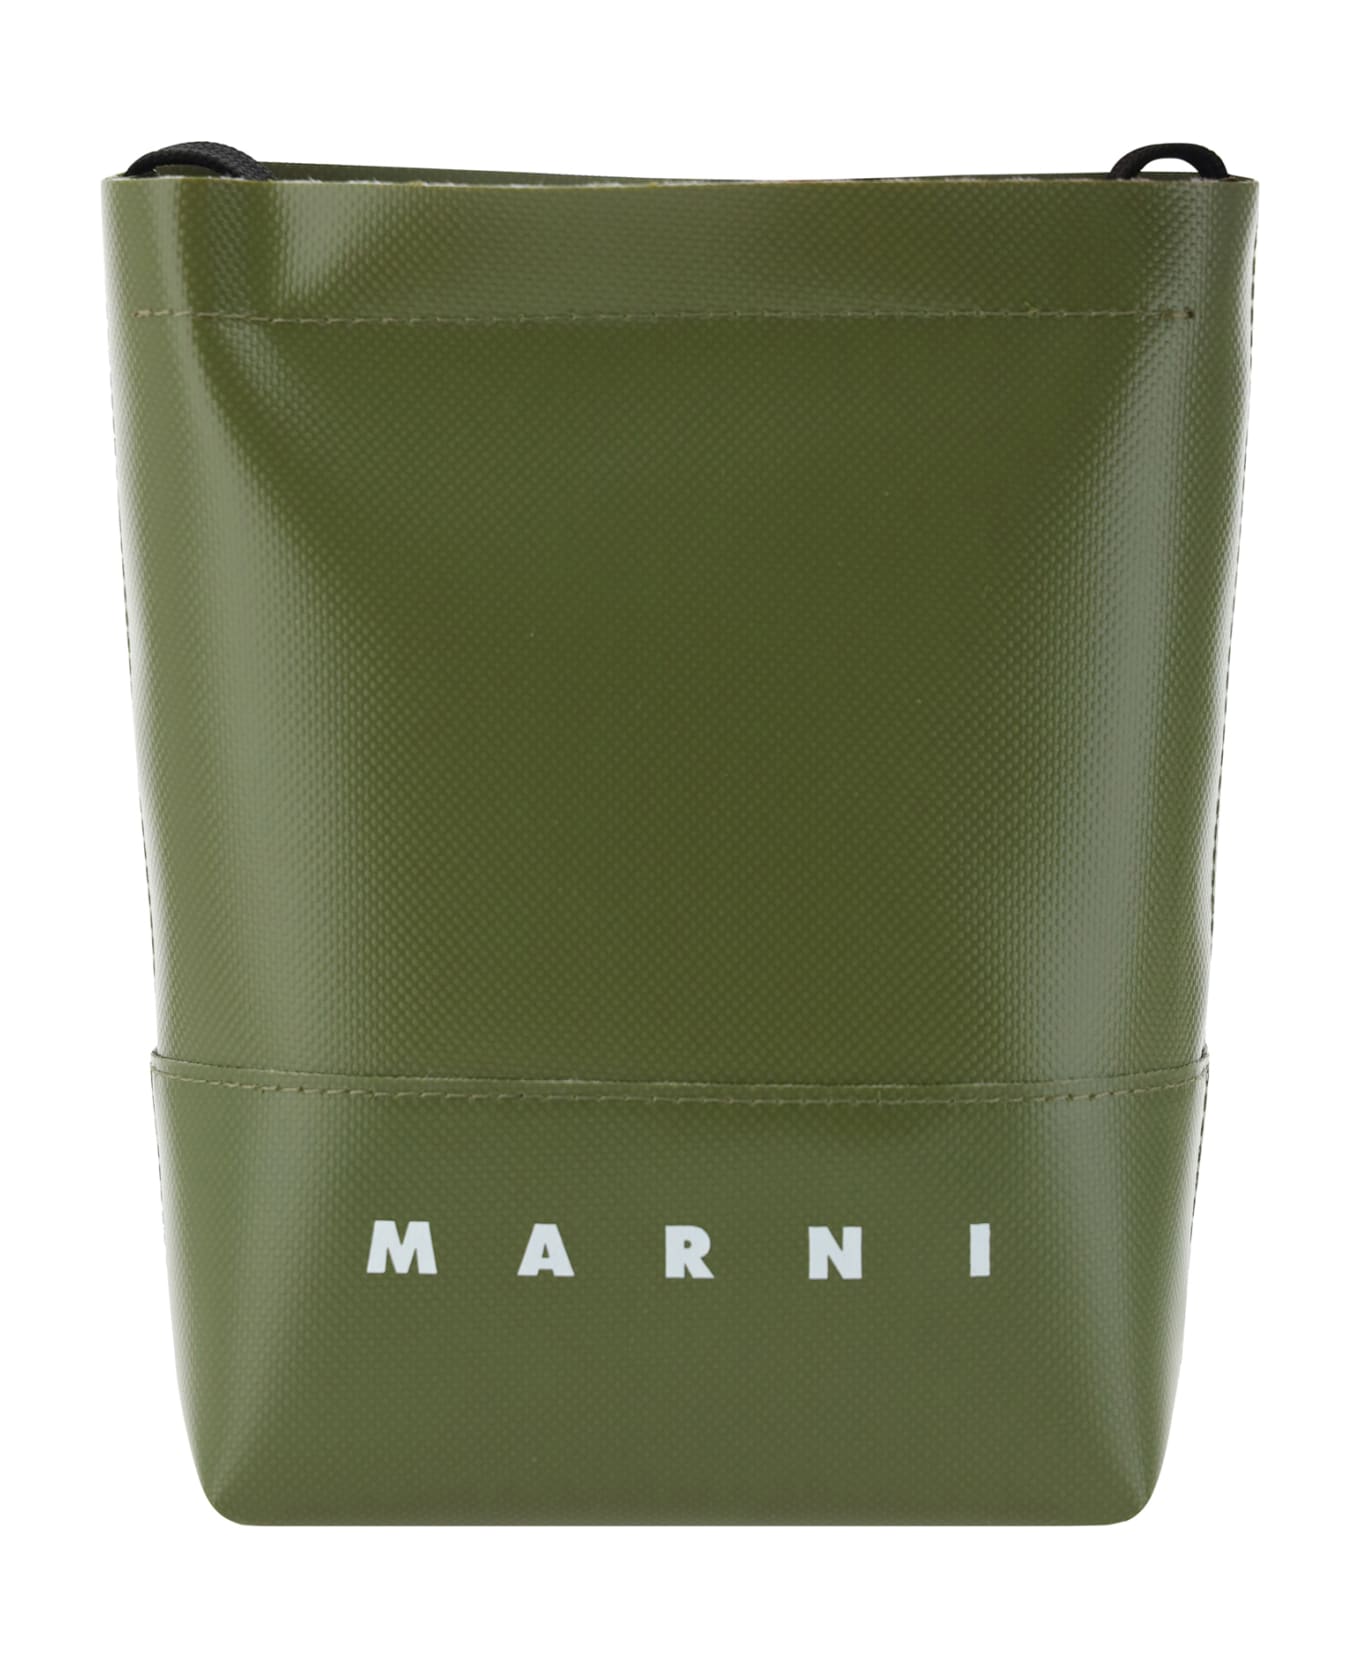 Marni Shoulder Bag - 00v67 トートバッグ